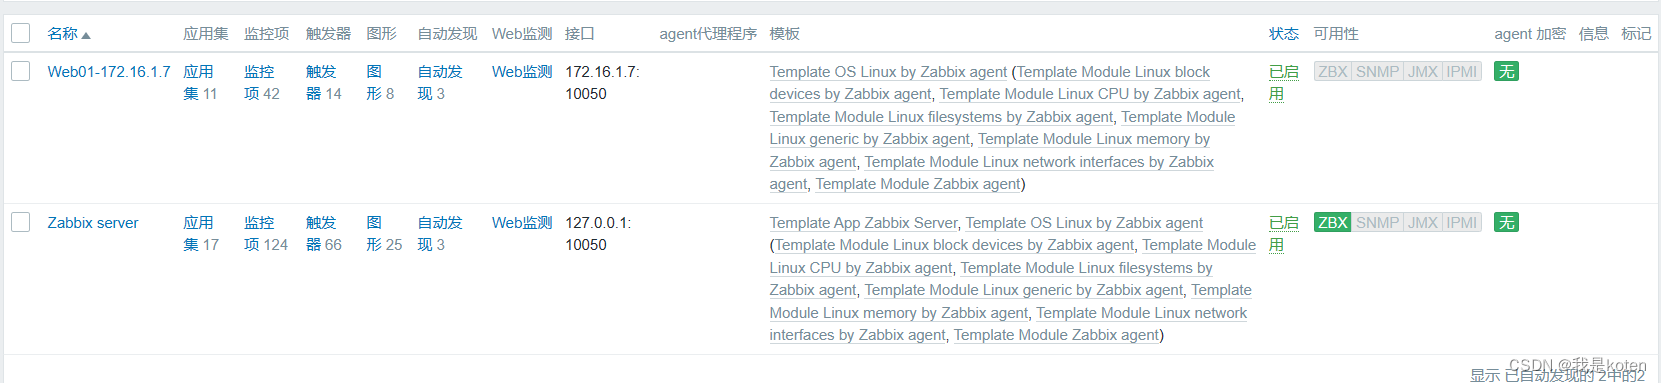 【运维知识进阶篇】zabbix5.0稳定版详解1（安装+部署+添加服务器+拆分数据库）